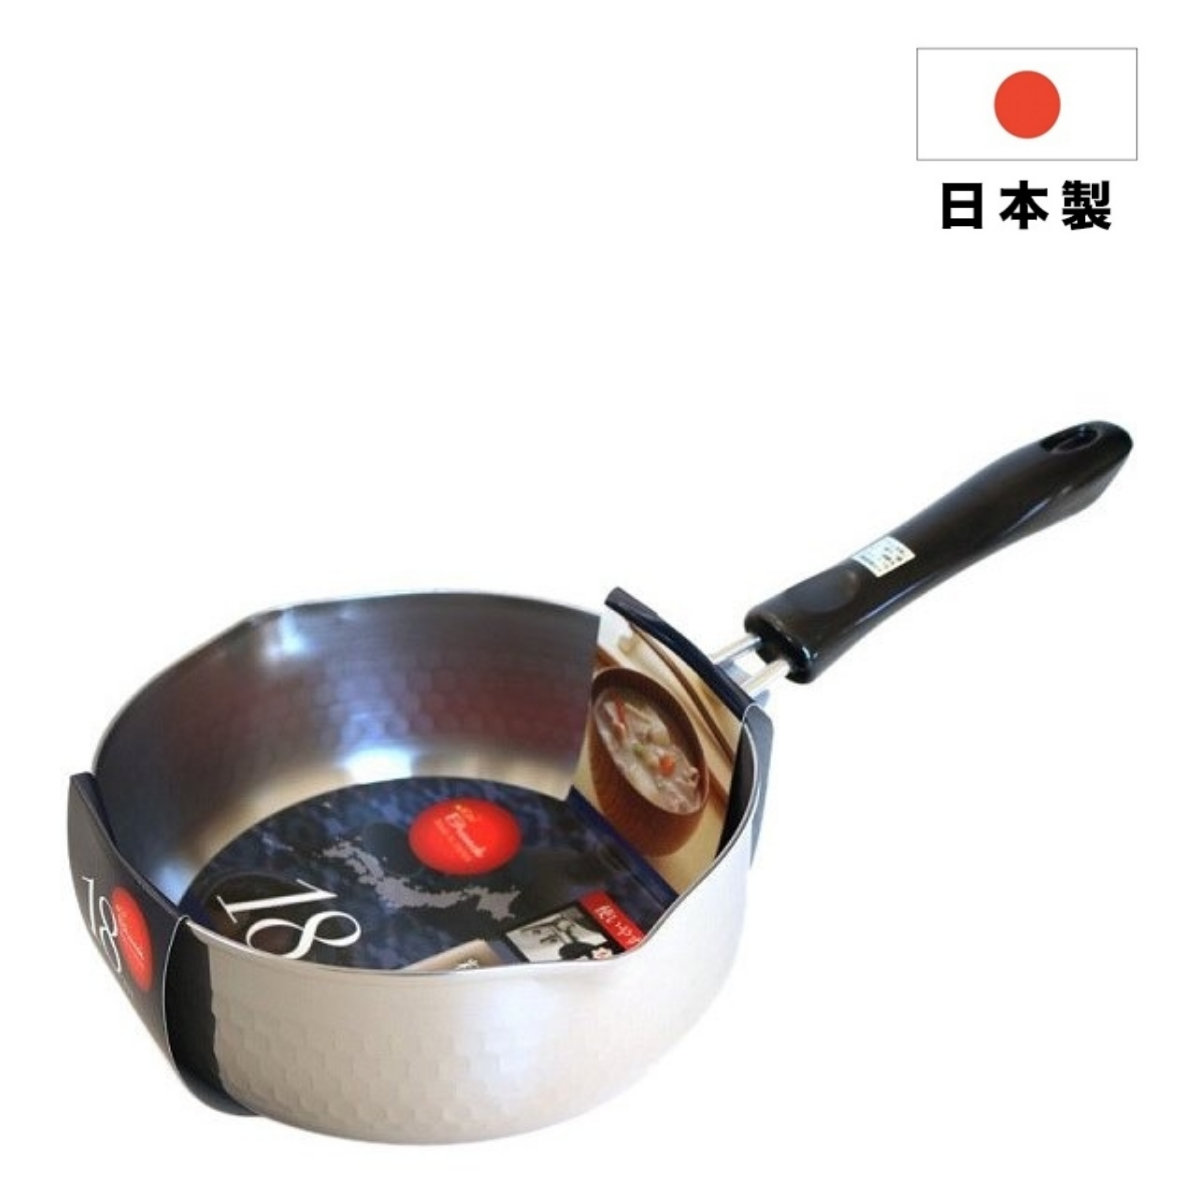 日式不銹鋼雪平鍋 (電磁爐適用)